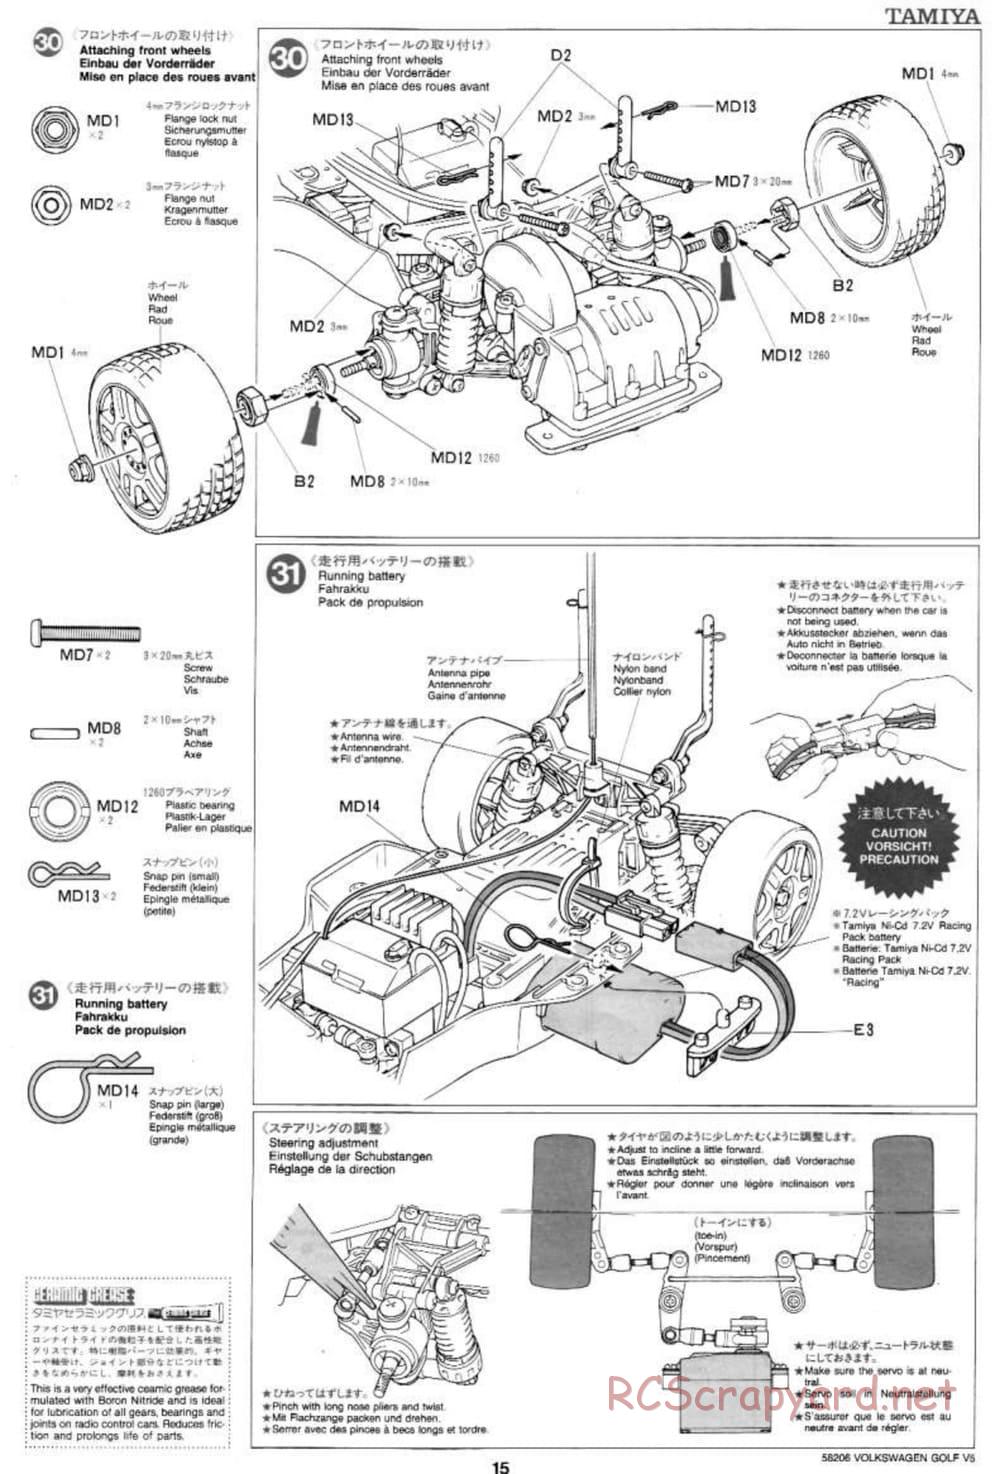 Tamiya - Volkswagen Golf V5 - FF-01 Chassis - Manual - Page 15